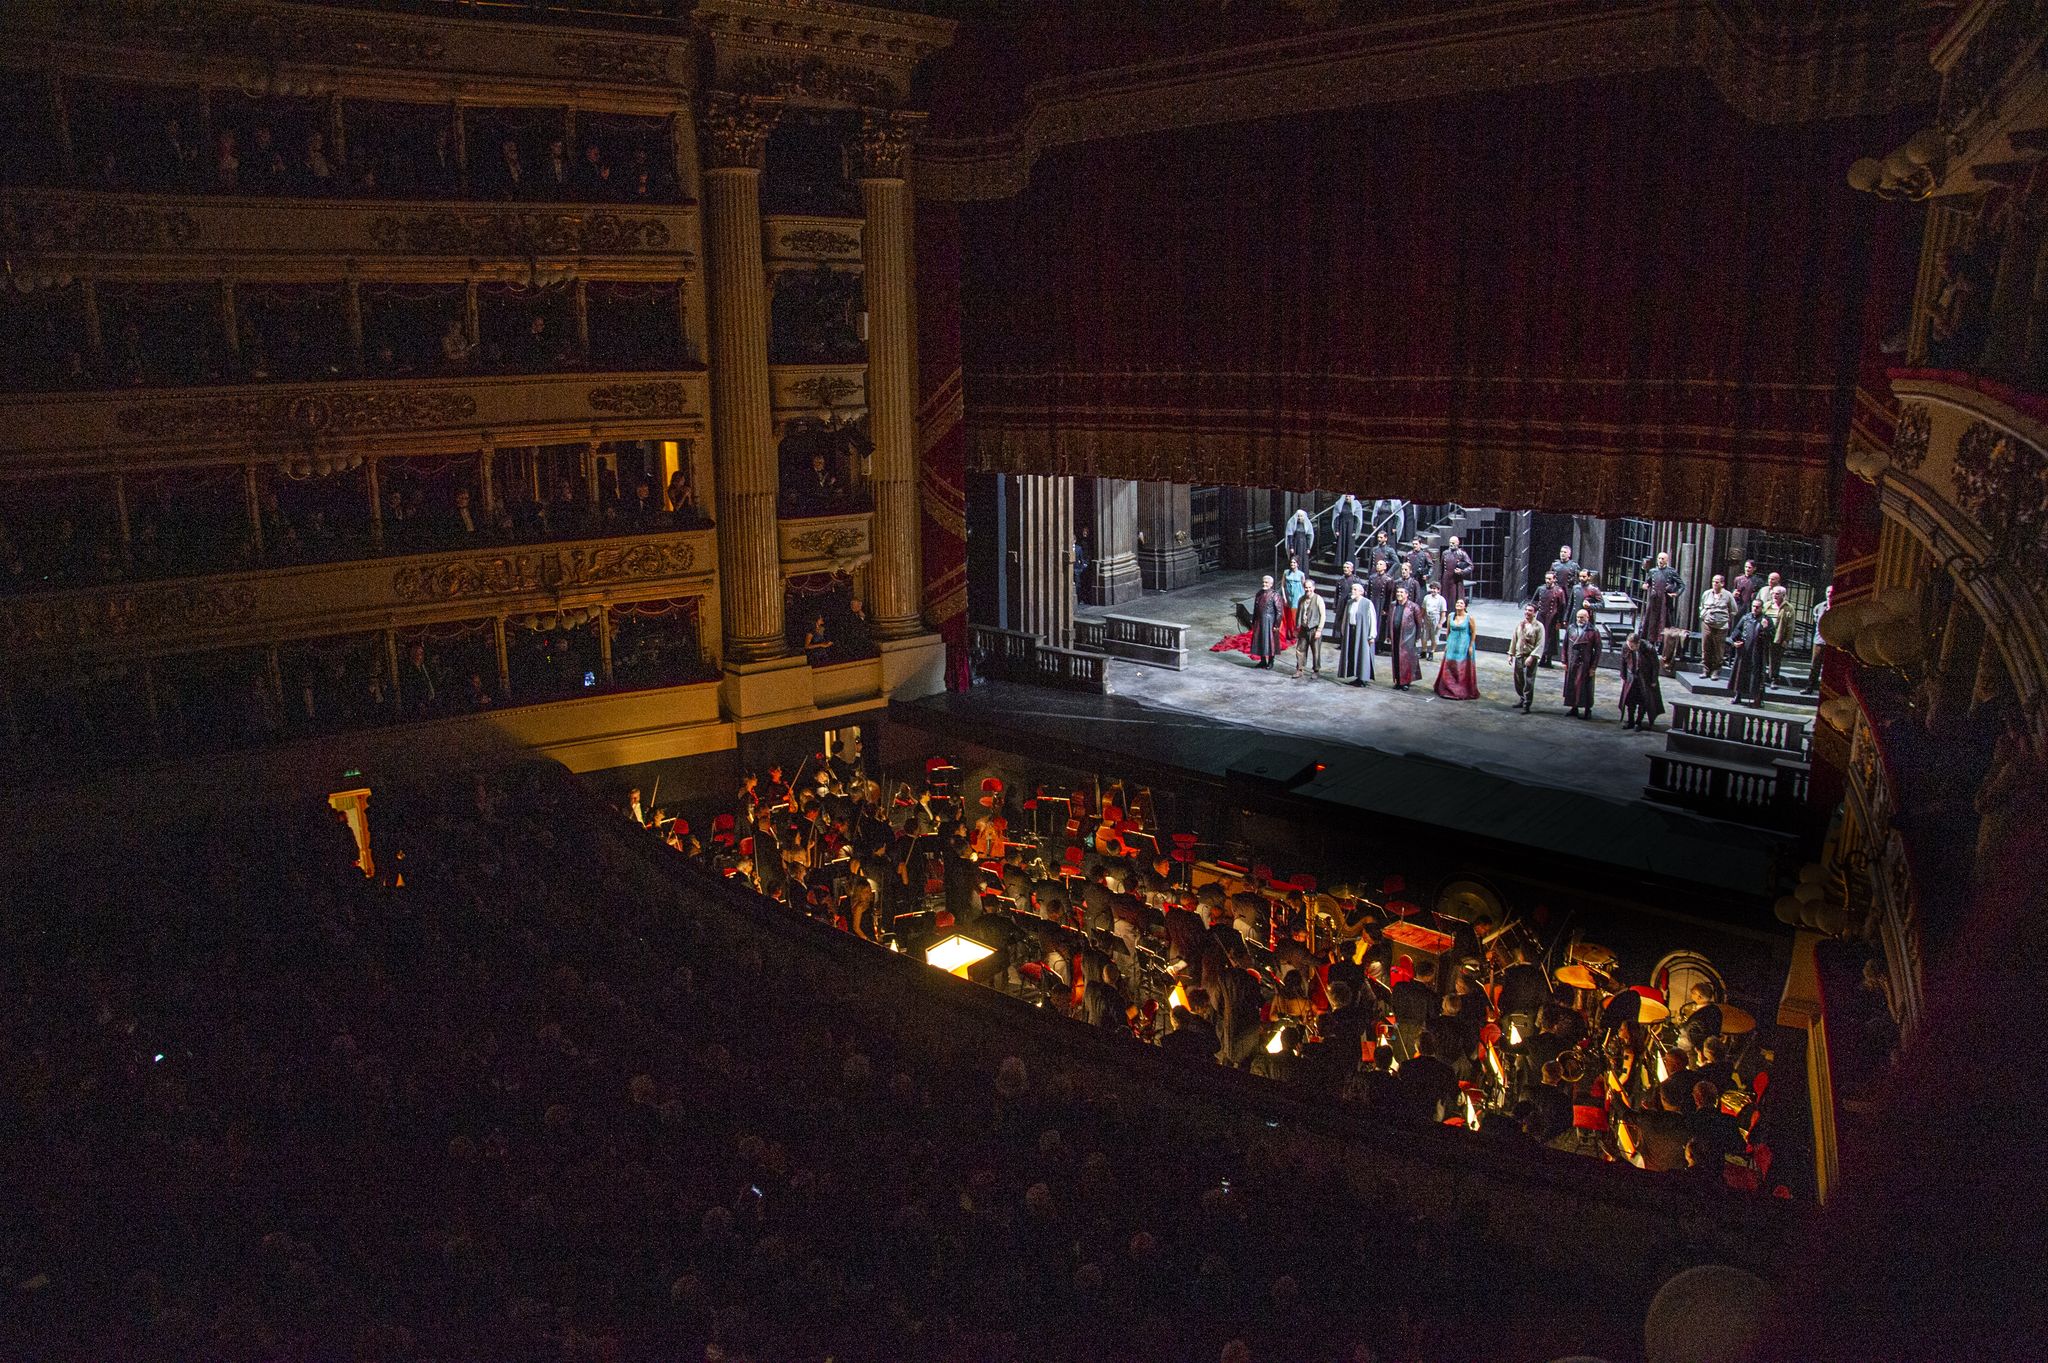 Prima Al Teatro Alla Scala - Season 2019/2020 Opening